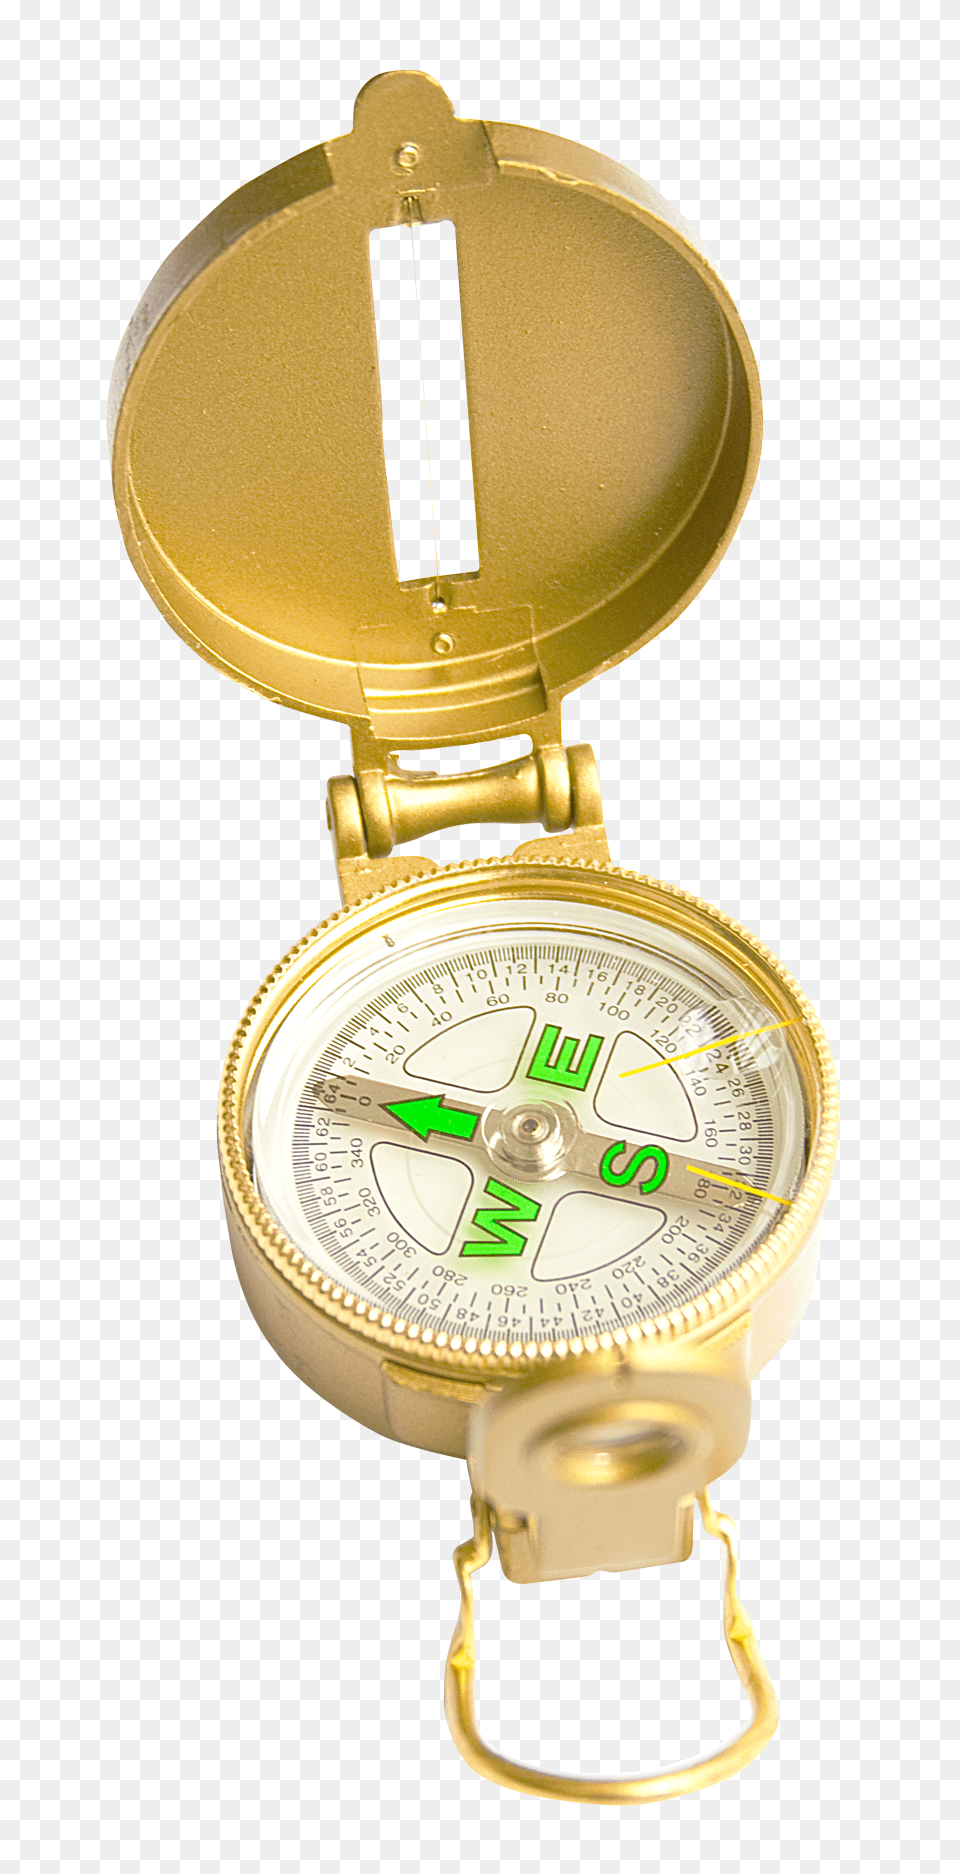 Pngpix Com Compass Transparent Image, Wristwatch Free Png